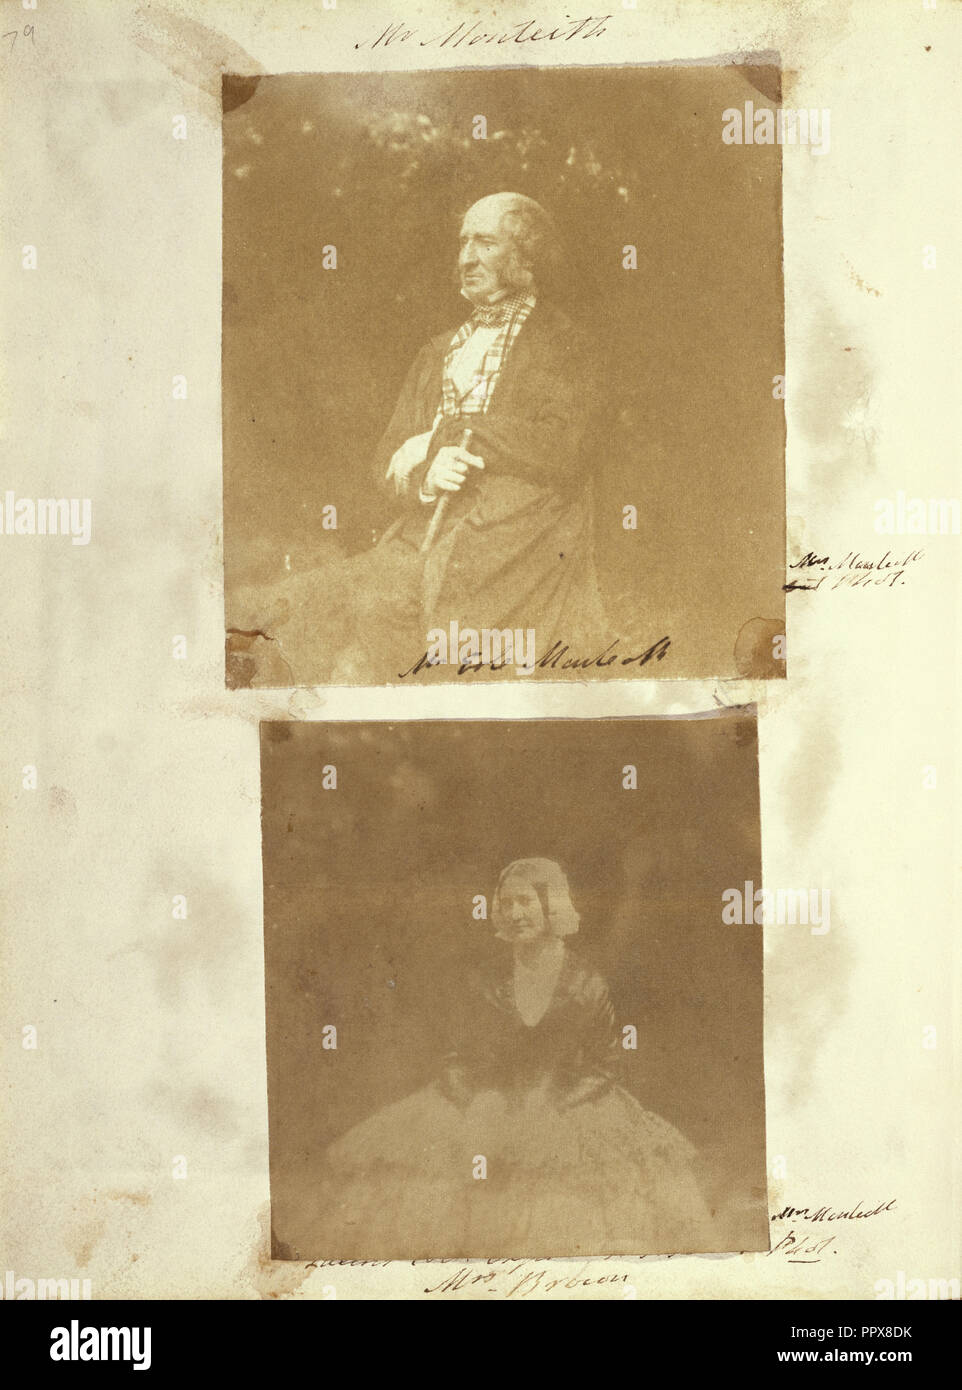 Mme Brown ; Frances Monteith, British, active dans les années 1840, environ 1845 ; sur papier salé imprimer à partir d'un calotype négatif ; 9,2 x 8,6 cm Banque D'Images